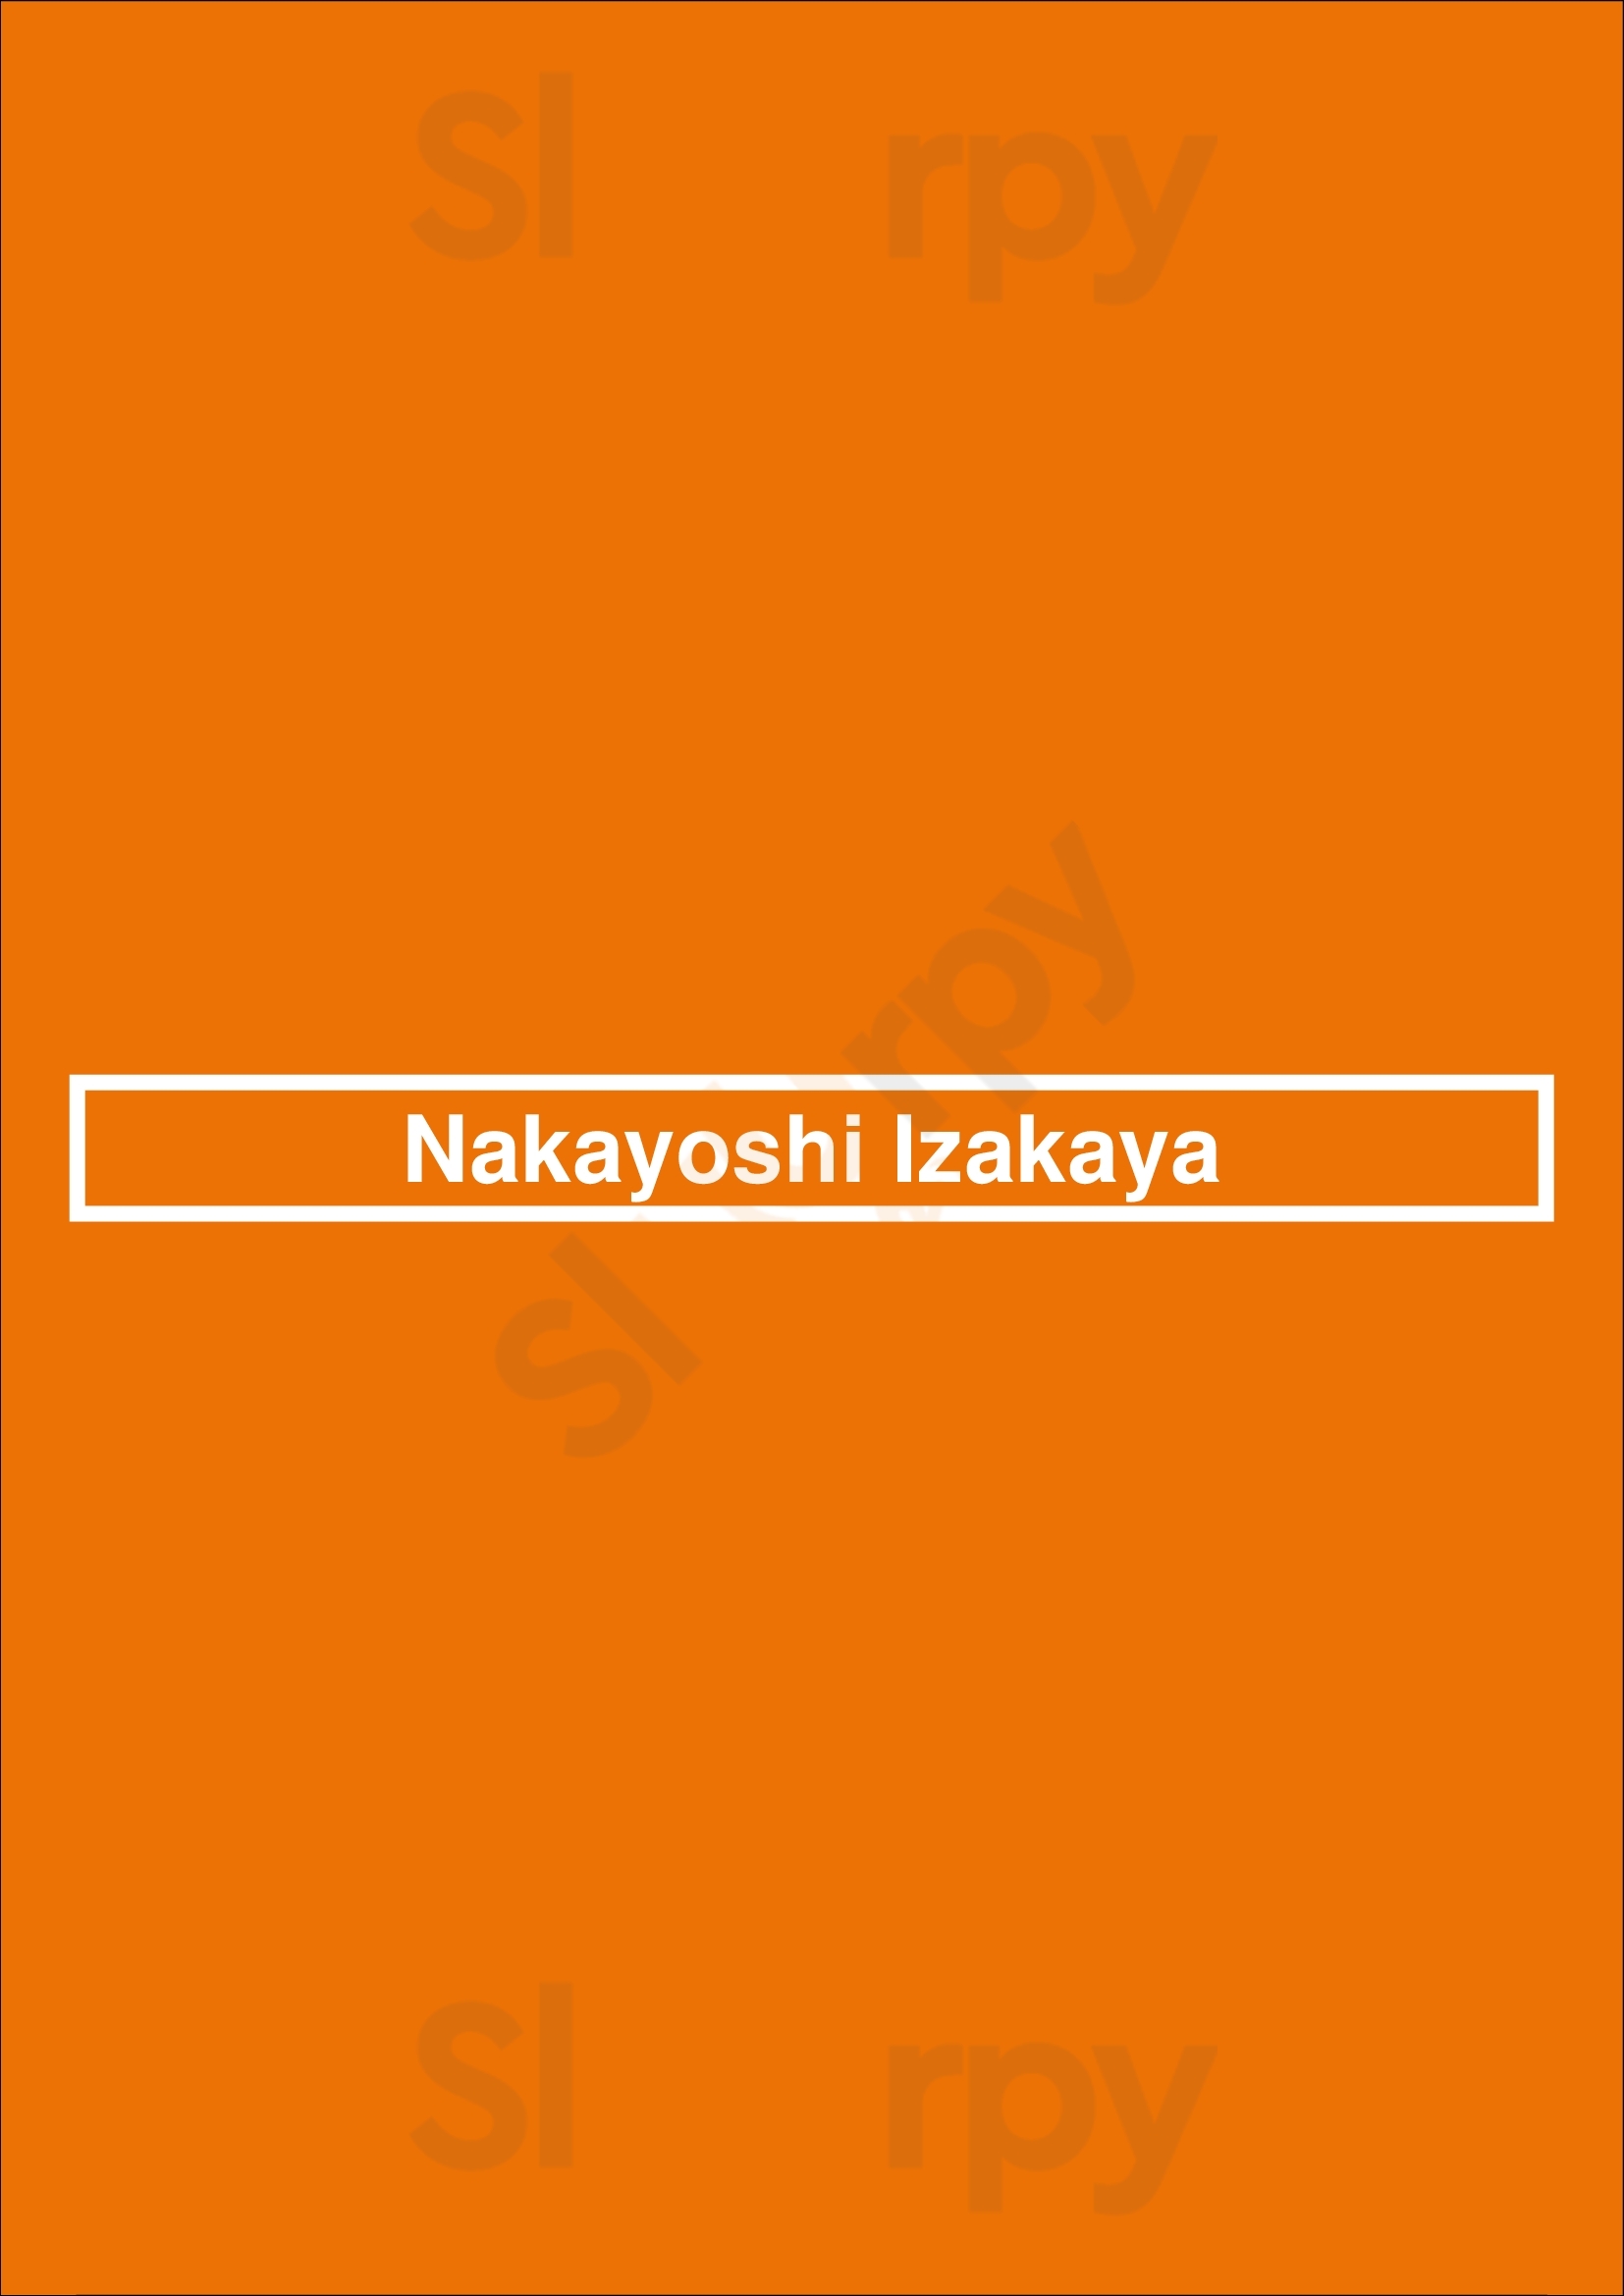 Nakayoshi Izakaya Toronto Menu - 1